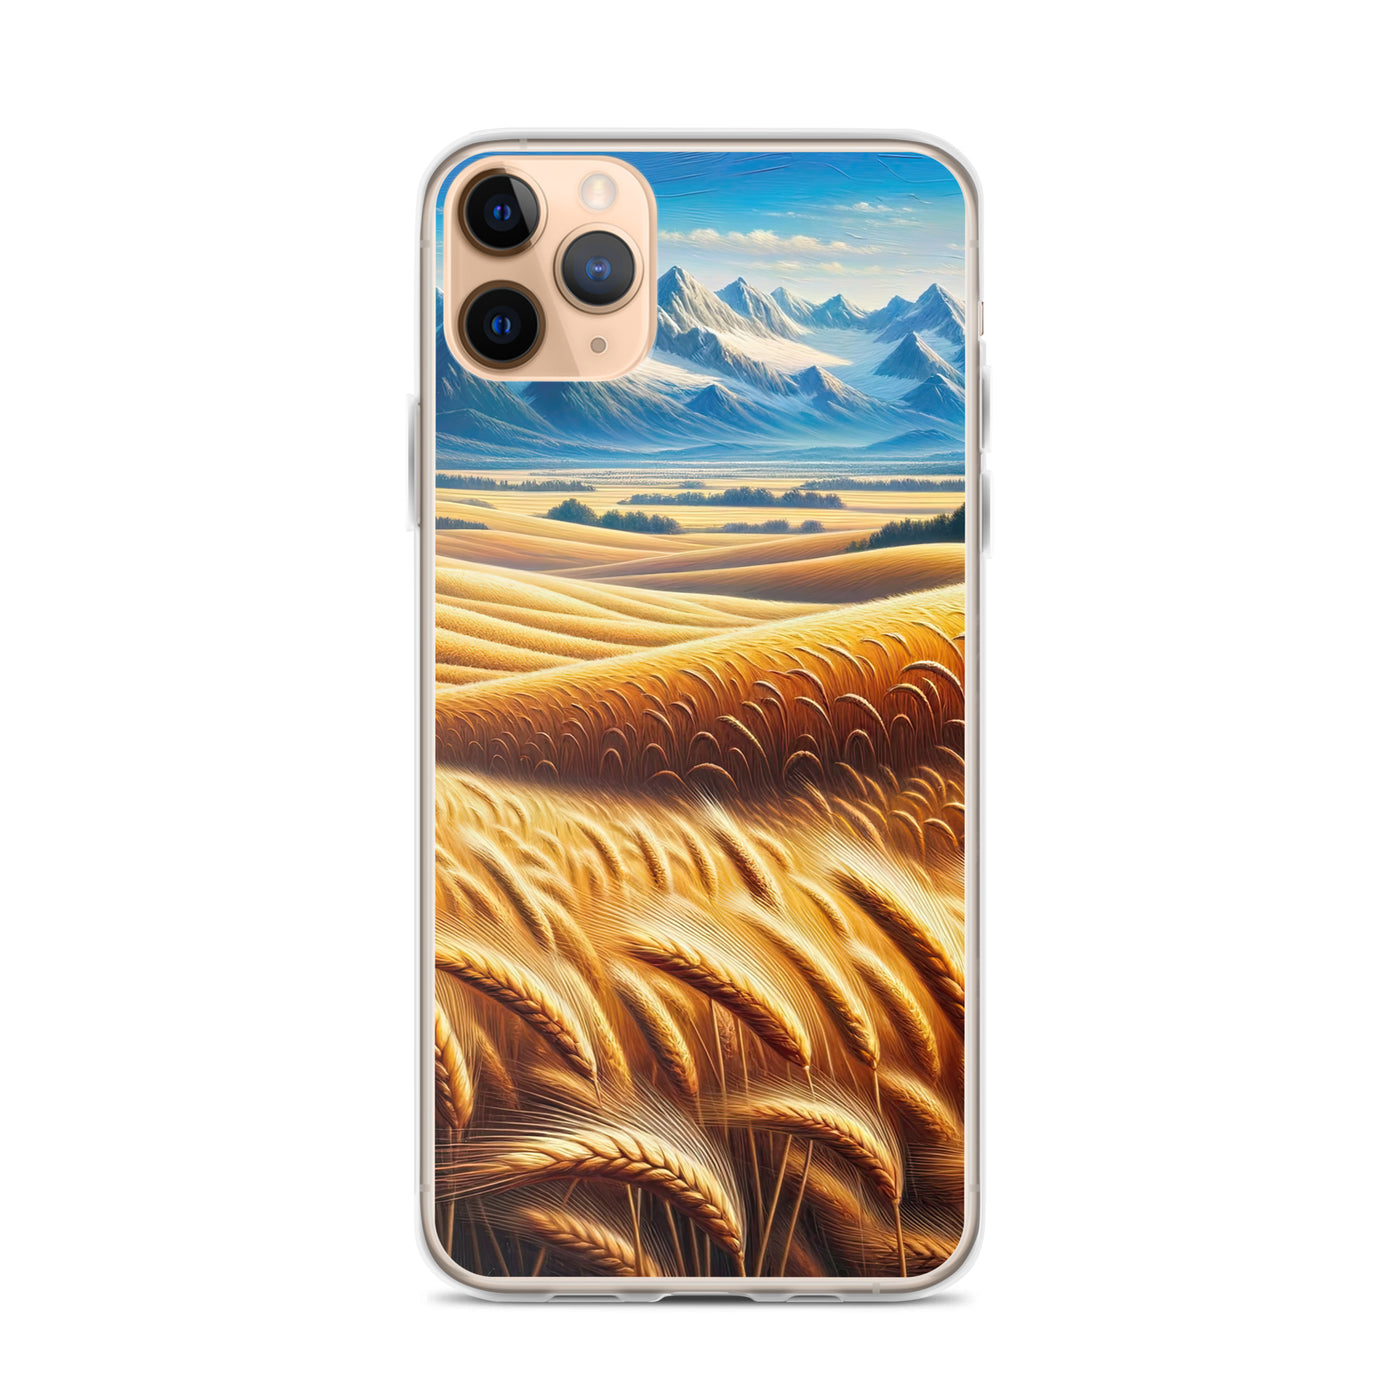 Ölgemälde eines weiten bayerischen Weizenfeldes, golden im Wind (TR) - iPhone Schutzhülle (durchsichtig) xxx yyy zzz iPhone 11 Pro Max